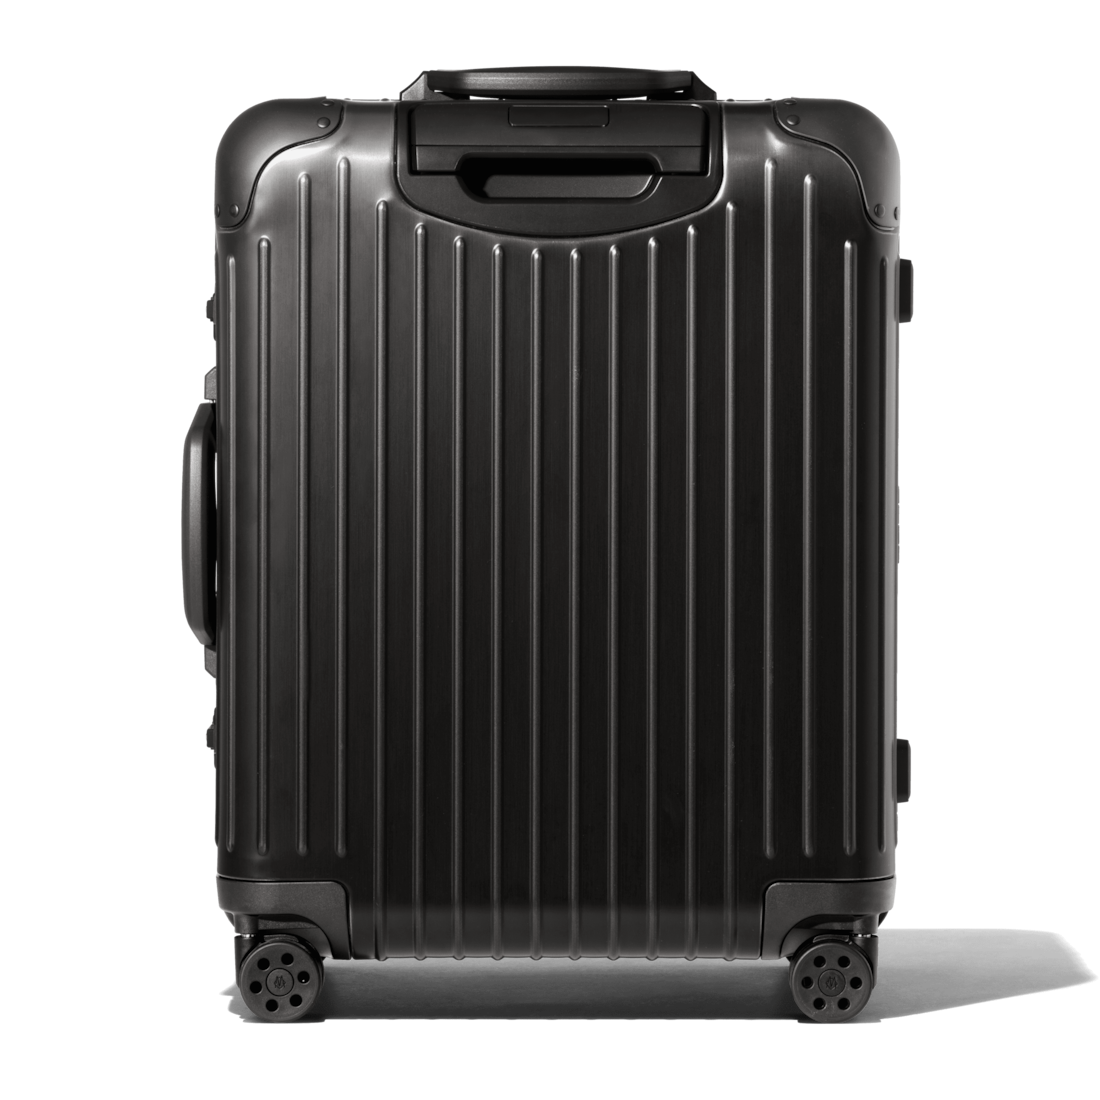 Original Cabin Plus Aluminum Suitcase | Black | RIMOWA